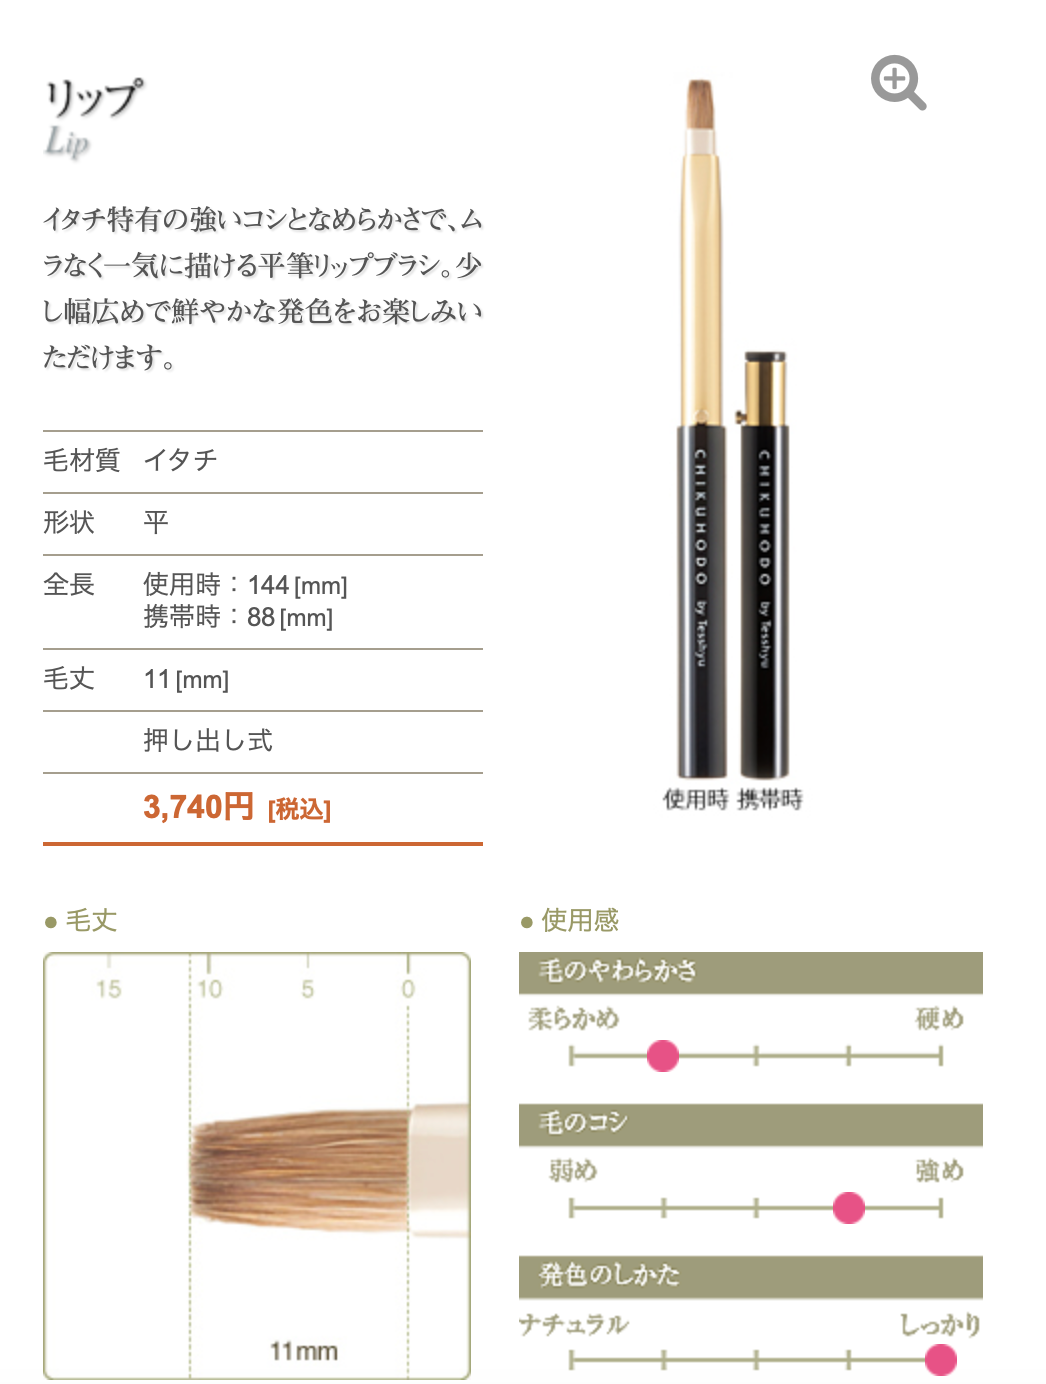 Chikuhodo Z-7 lip brush  (itachi)